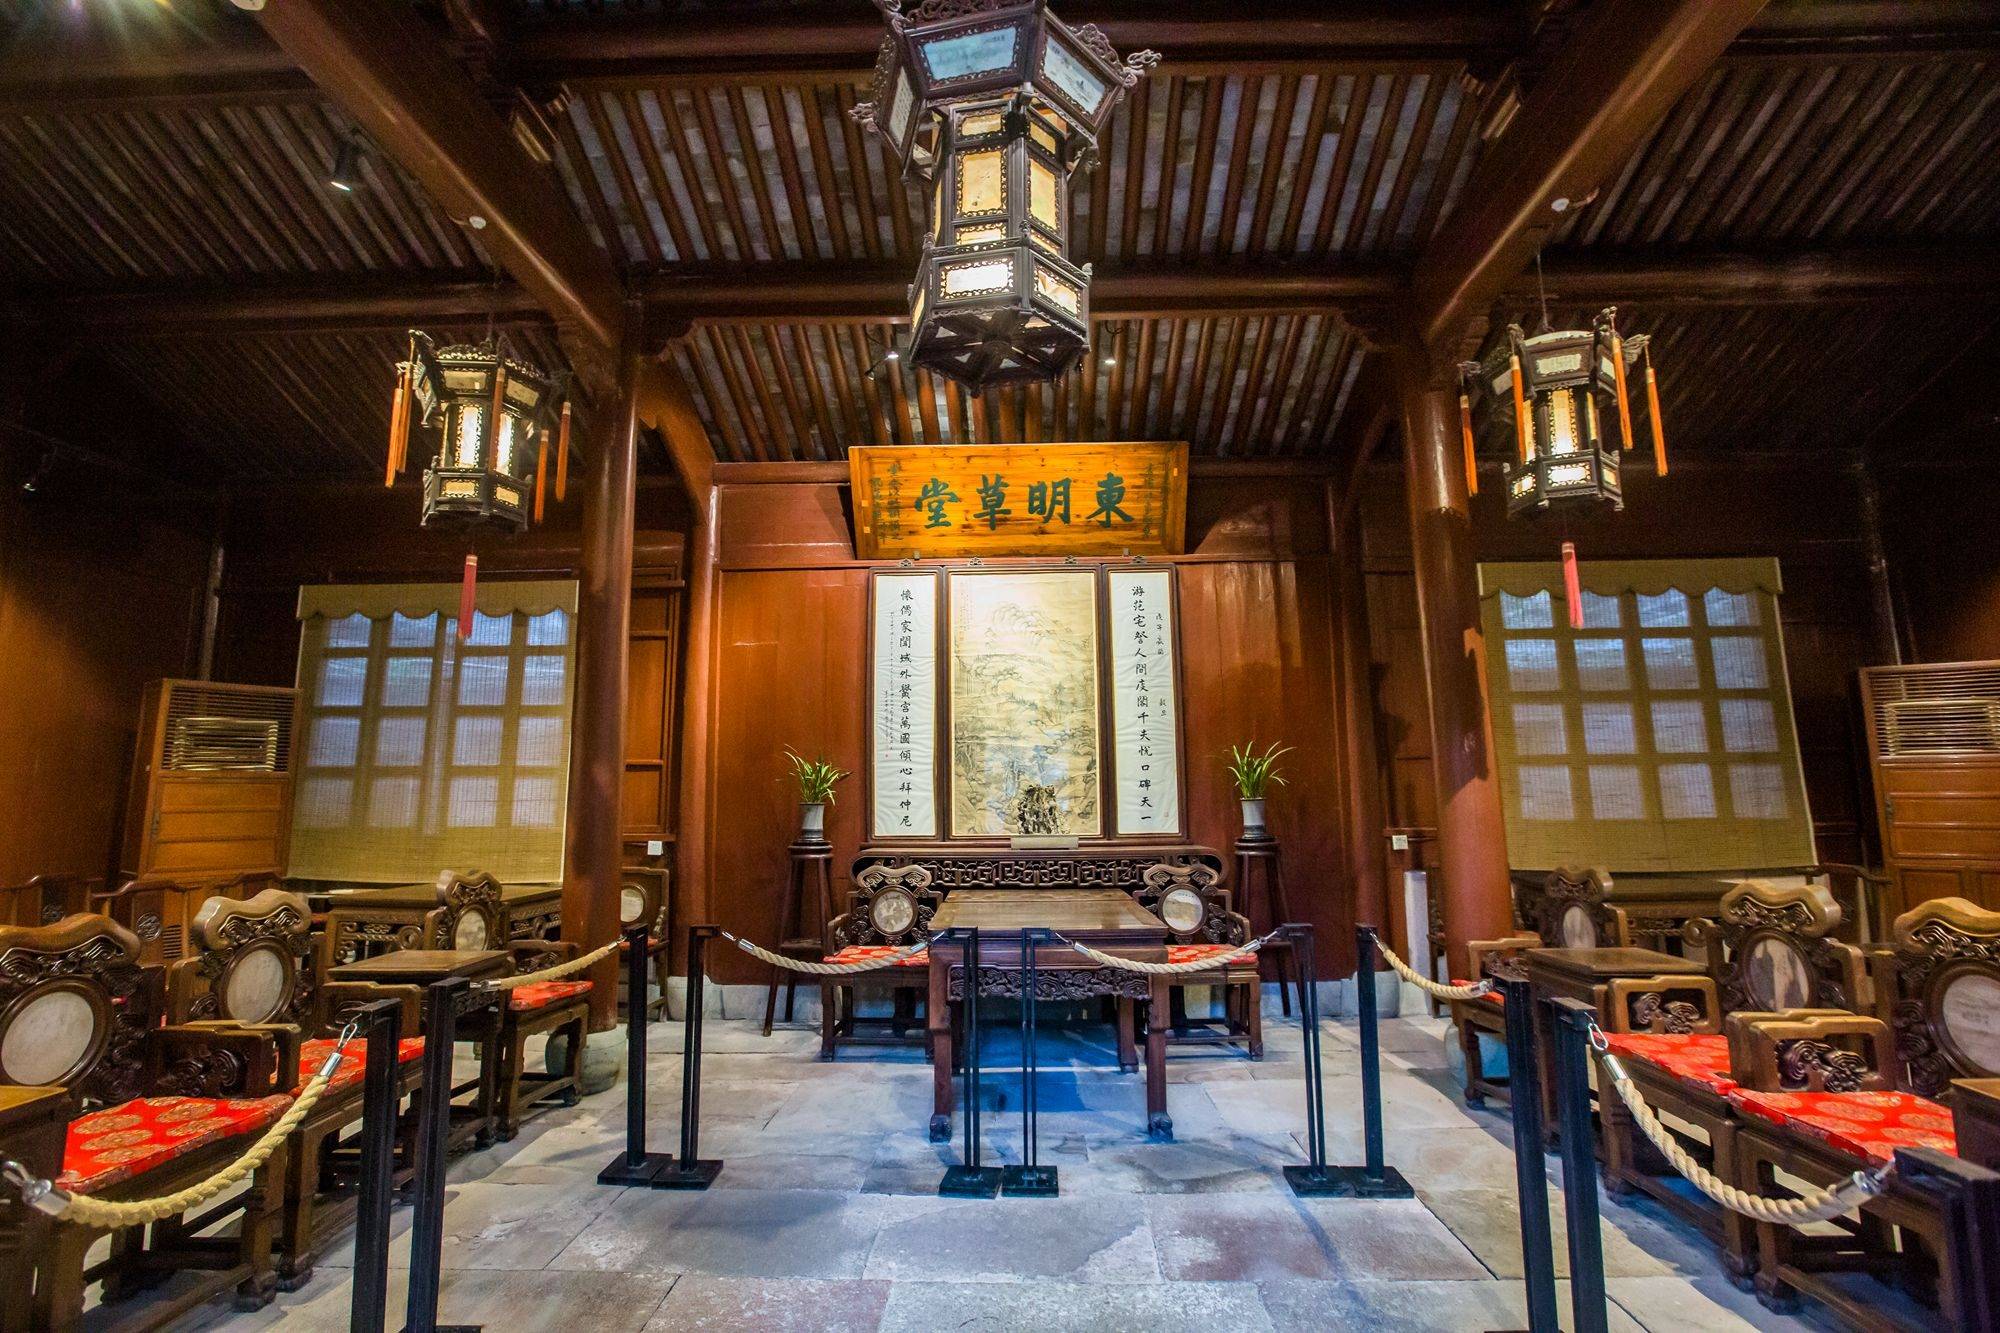 宁波天一阁,历史悠久,文化深厚,是世界最早的三大家族图书馆